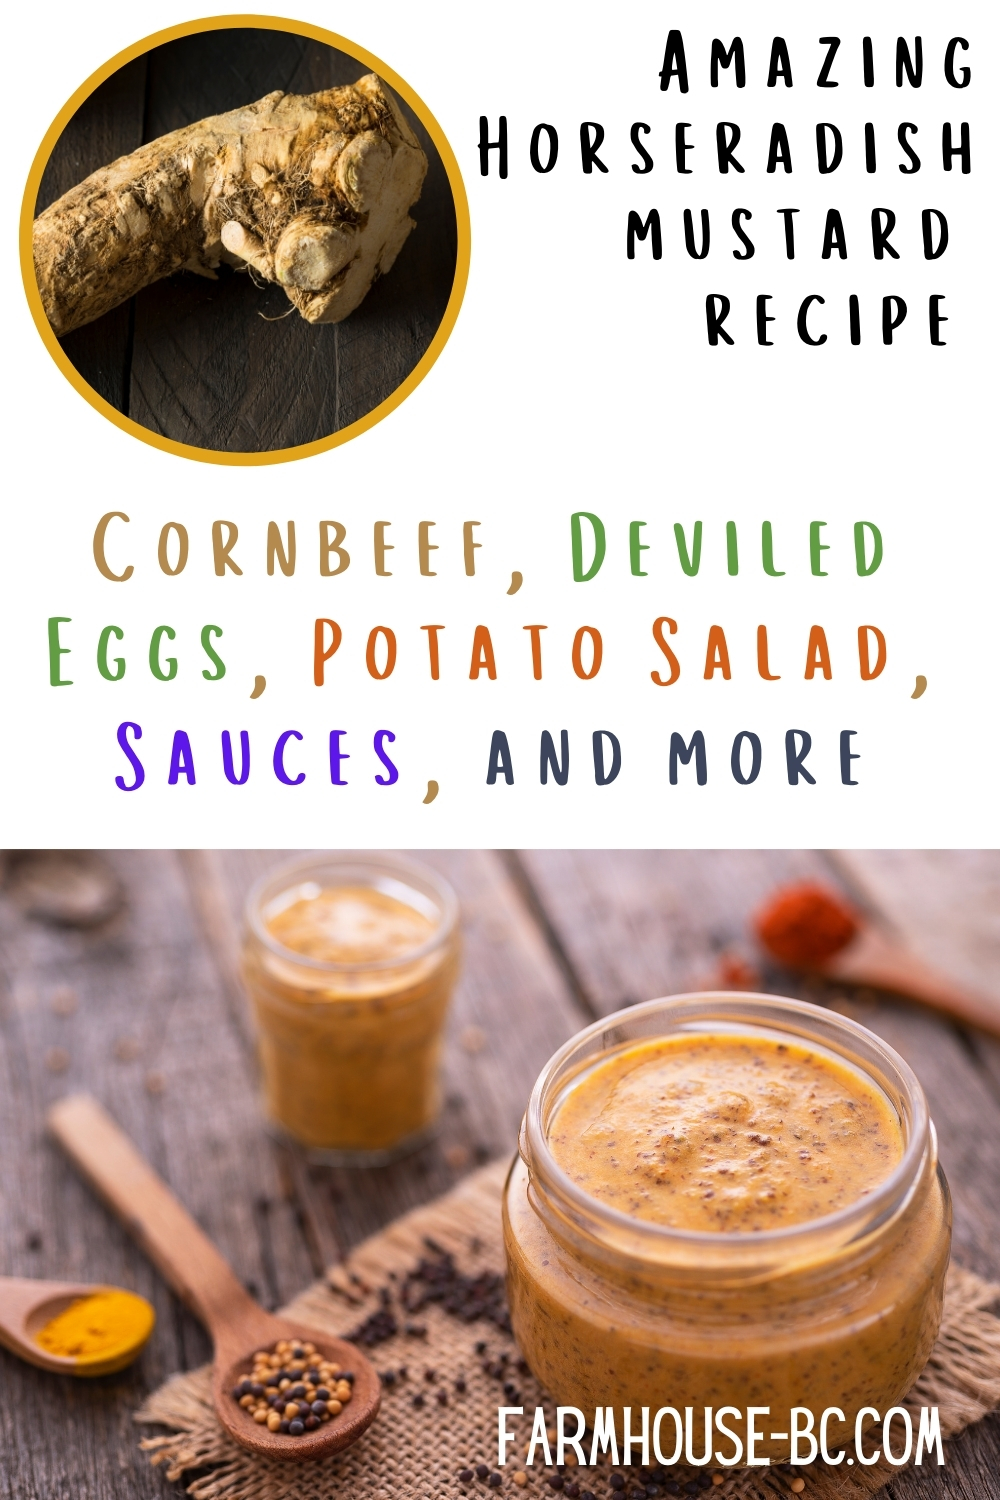 Amazing and Easy Horseradish Mustard Recipe